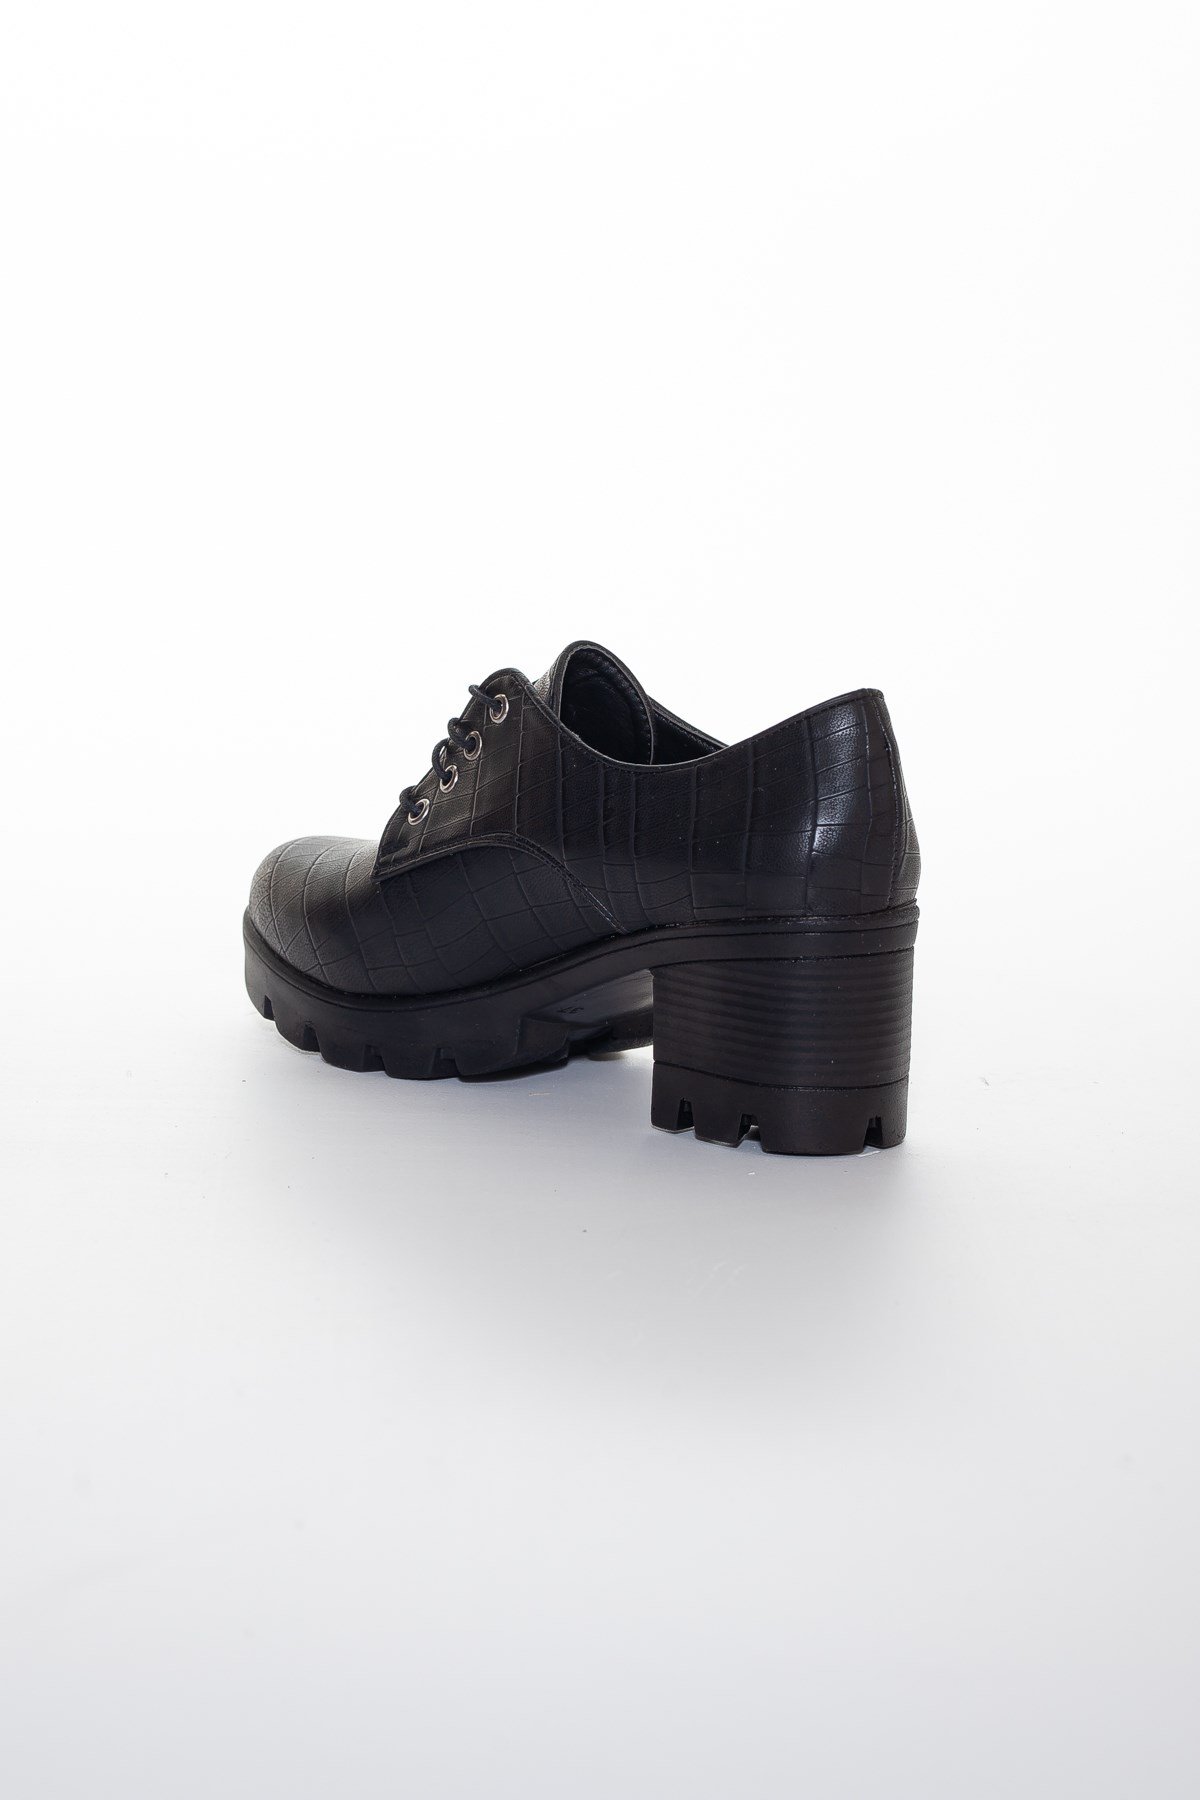 Siyah Kroko Kadın Günlük Ayakkabı | Dilimler Ayakkabı